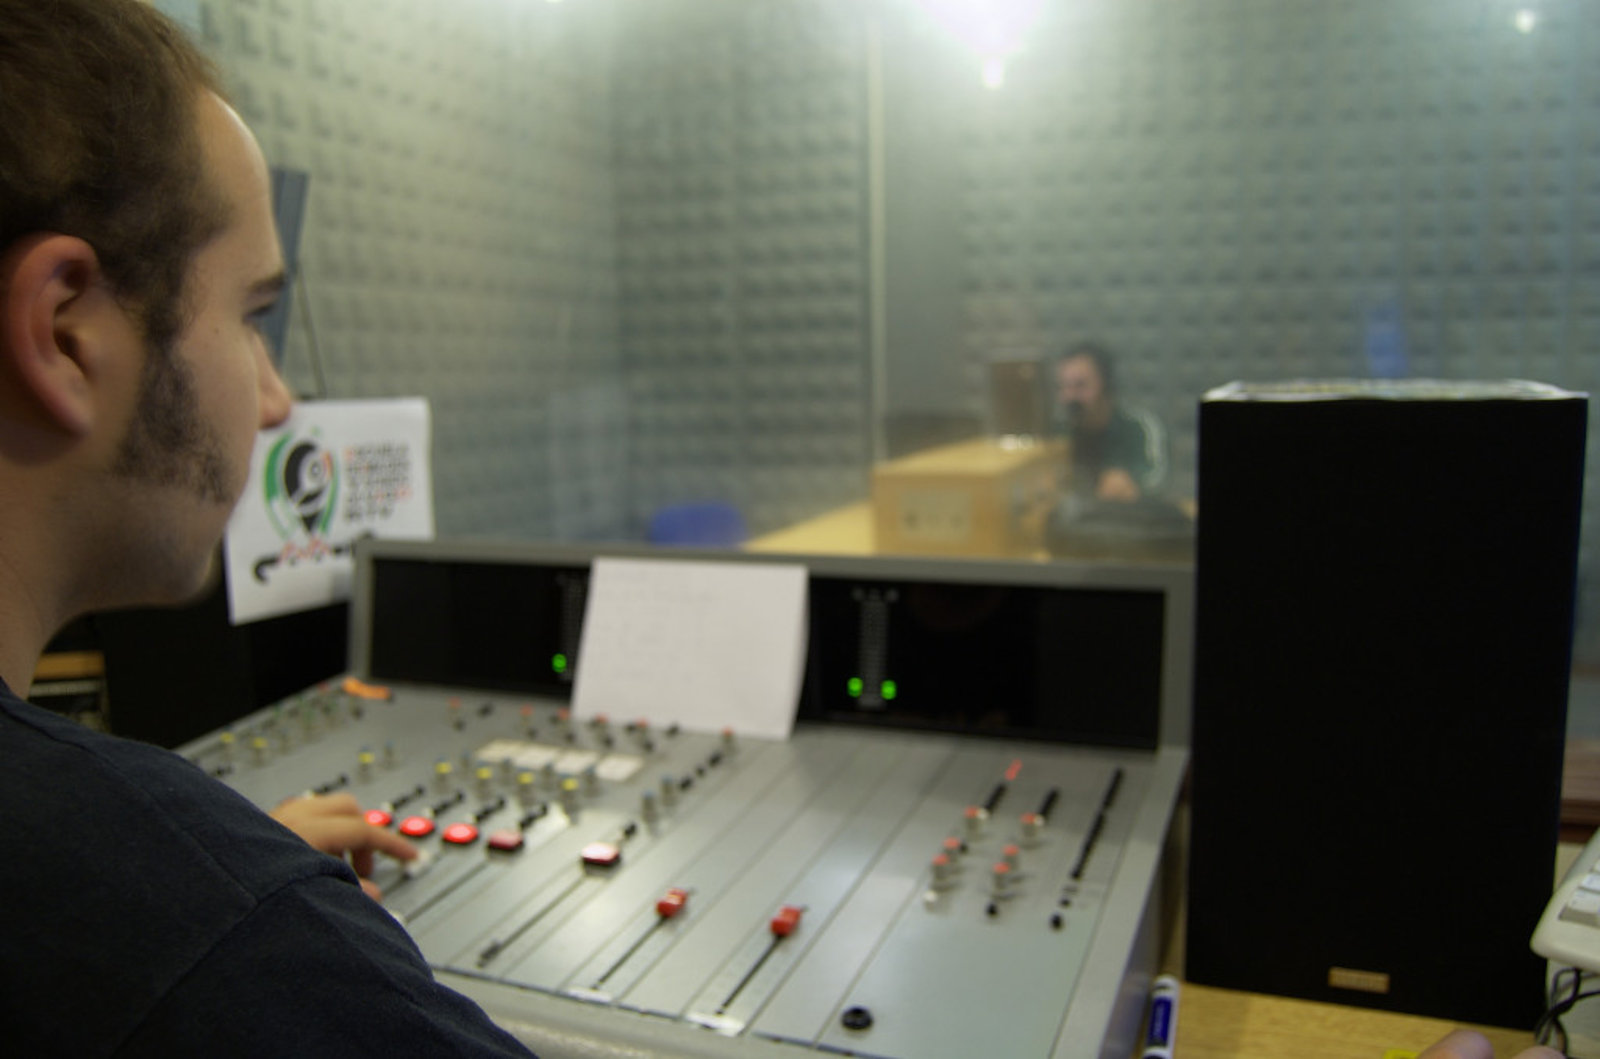 Escuela de Imagen y Sonido de Vigo EISV. Instalaciones de grabación de audio - Estudio de radio - Control de radio